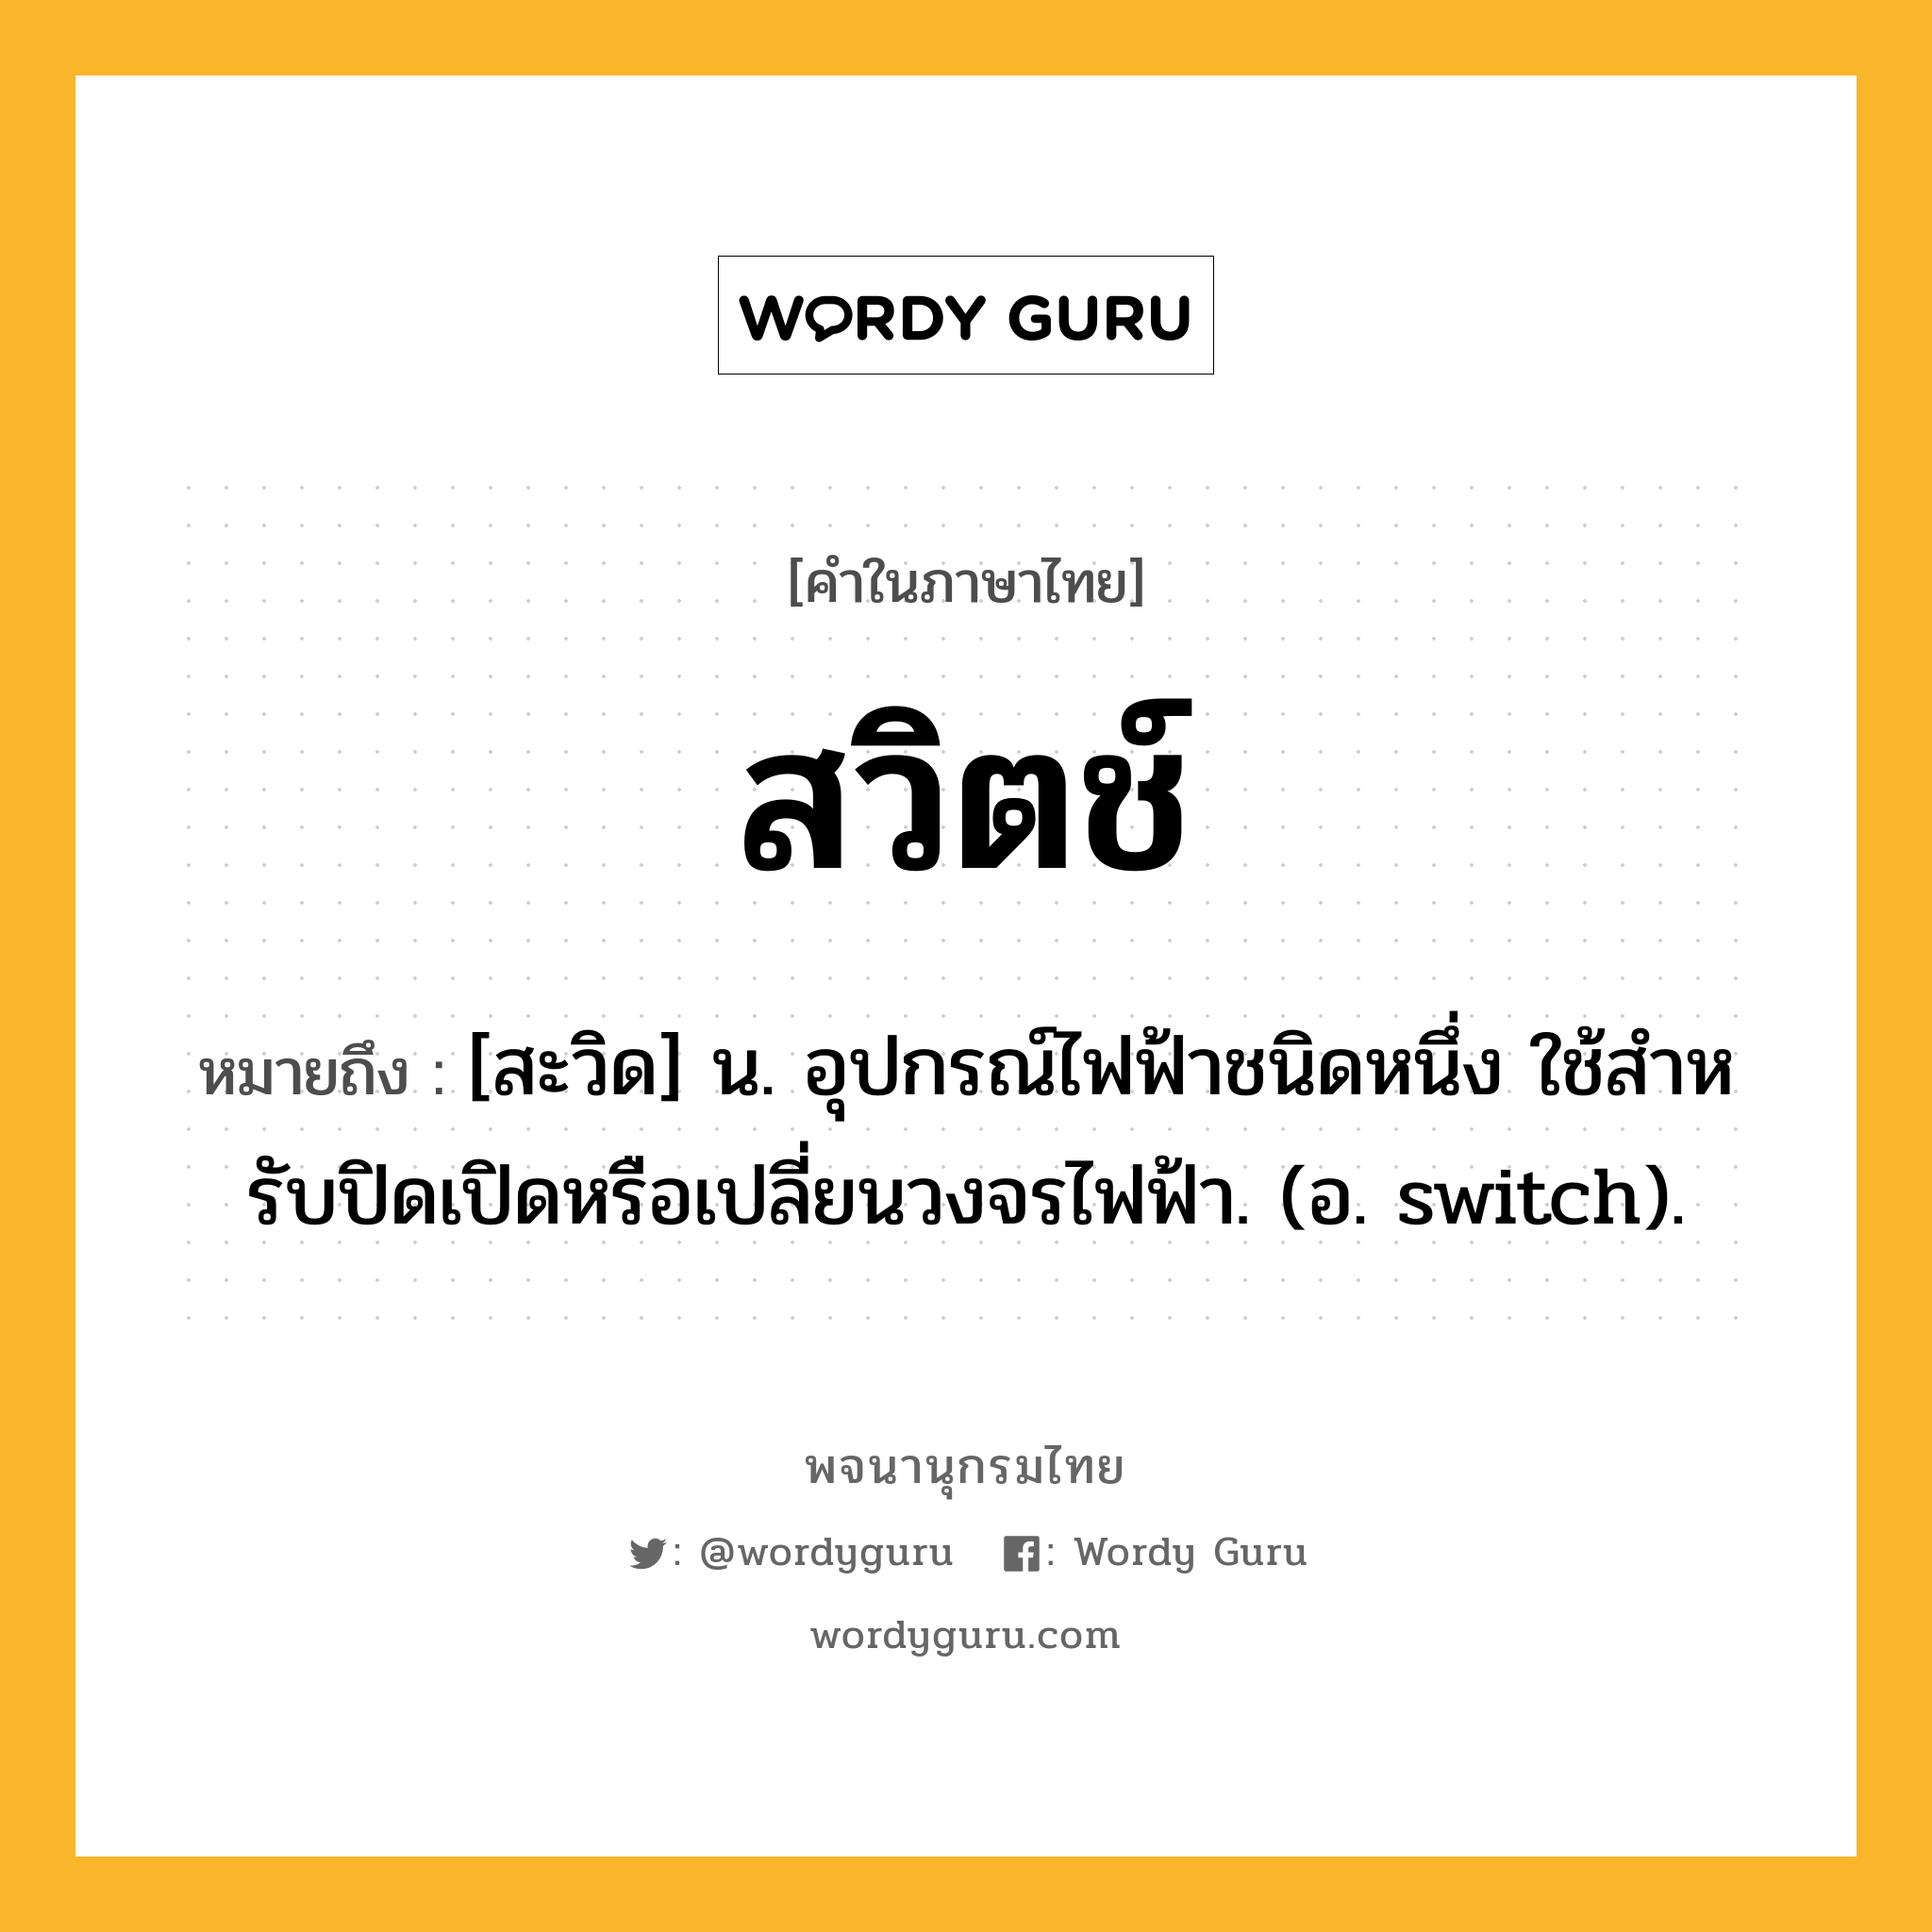 สวิตช์ ความหมาย หมายถึงอะไร?, คำในภาษาไทย สวิตช์ หมายถึง [สะวิด] น. อุปกรณ์ไฟฟ้าชนิดหนึ่ง ใช้สําหรับปิดเปิดหรือเปลี่ยนวงจรไฟฟ้า. (อ. switch).